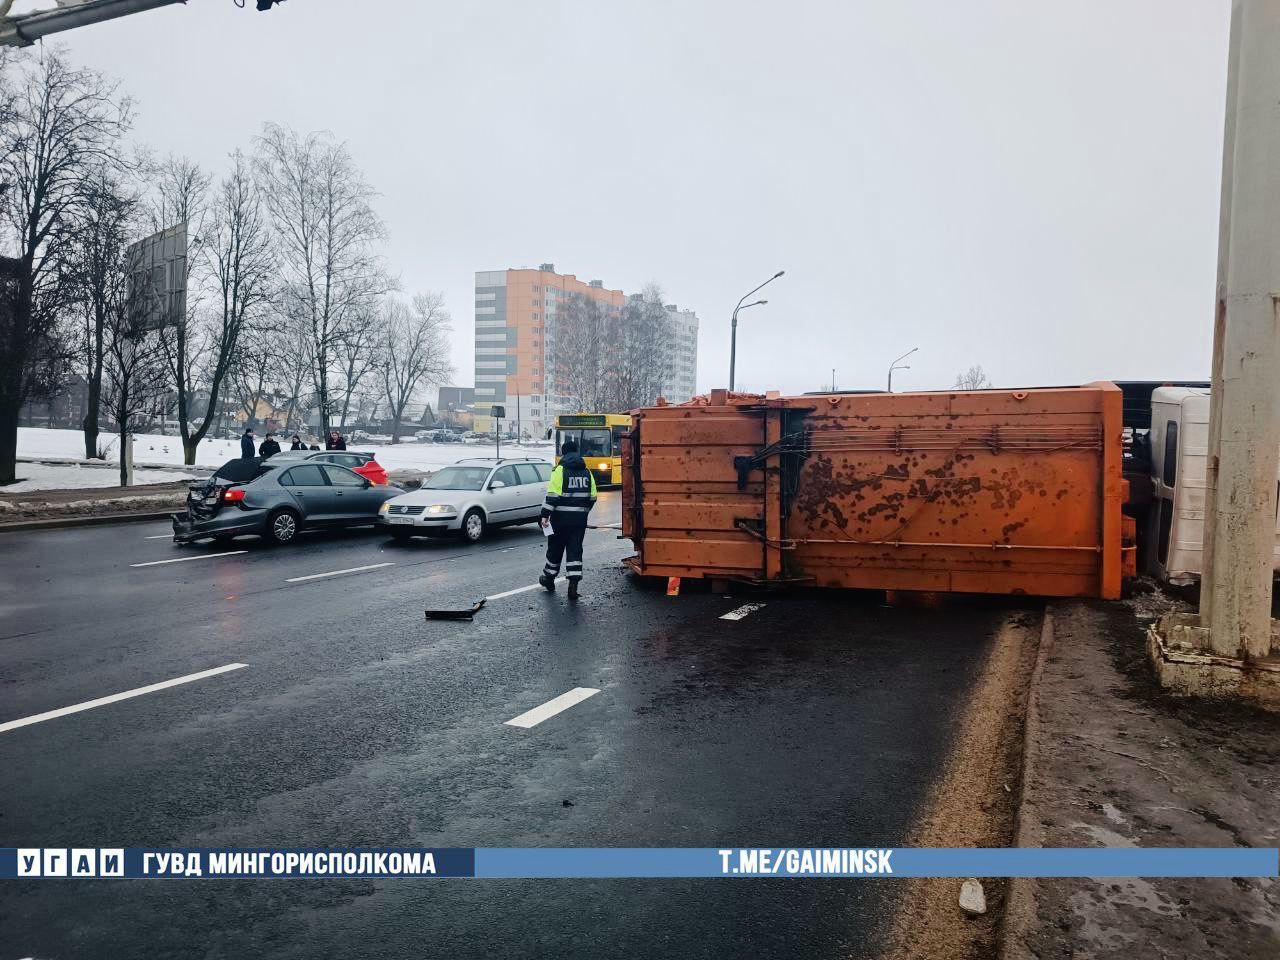 Собака "опрокинула" мусоровоз на Партизанском проспекте в Минске в последний день года